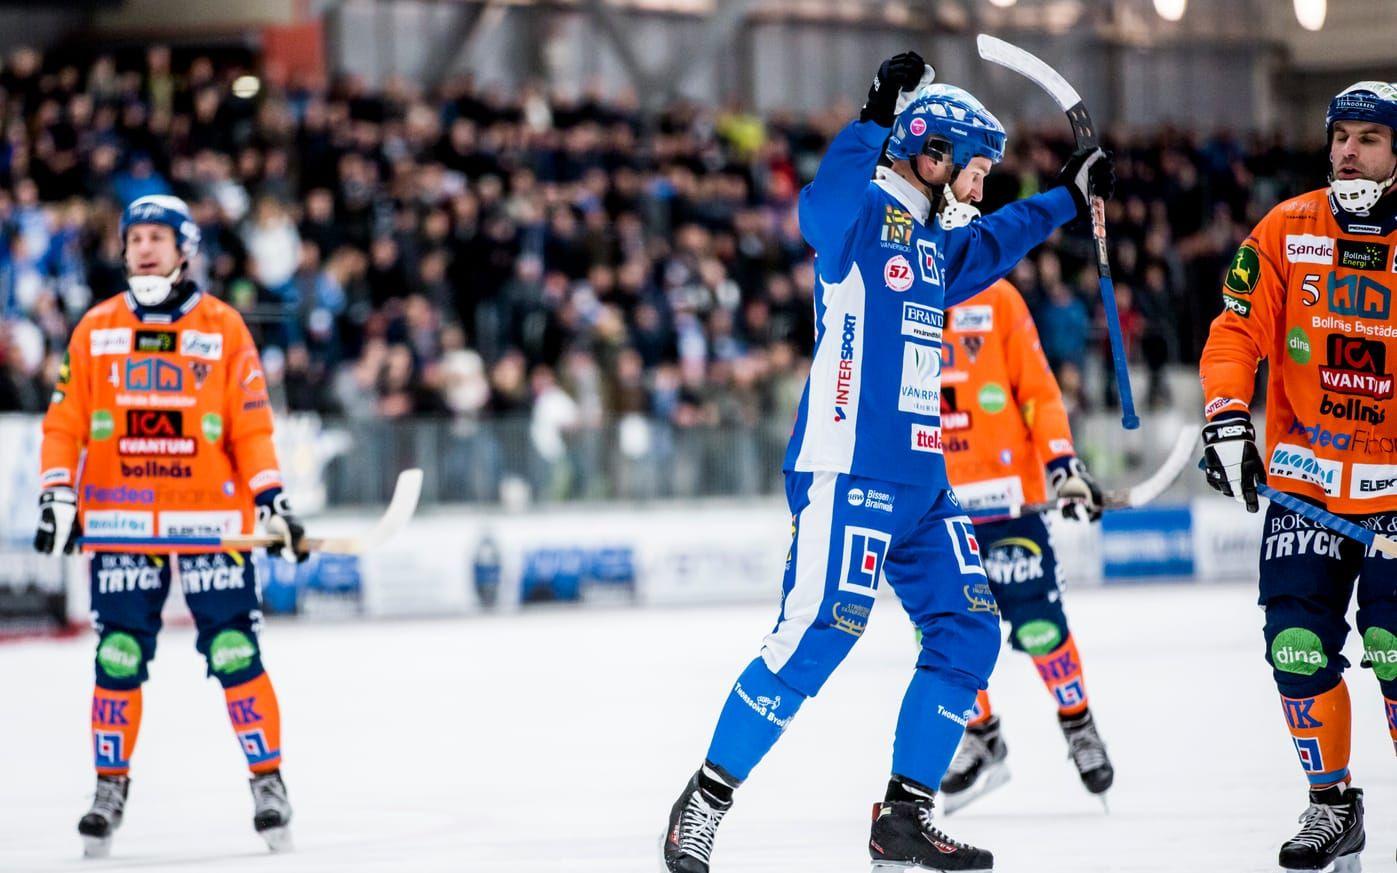 Bild: Sebastian LaMotte. Joakim Hedqvist har krutat in en straff som betydde 2-0-ledning för Vänersborg.